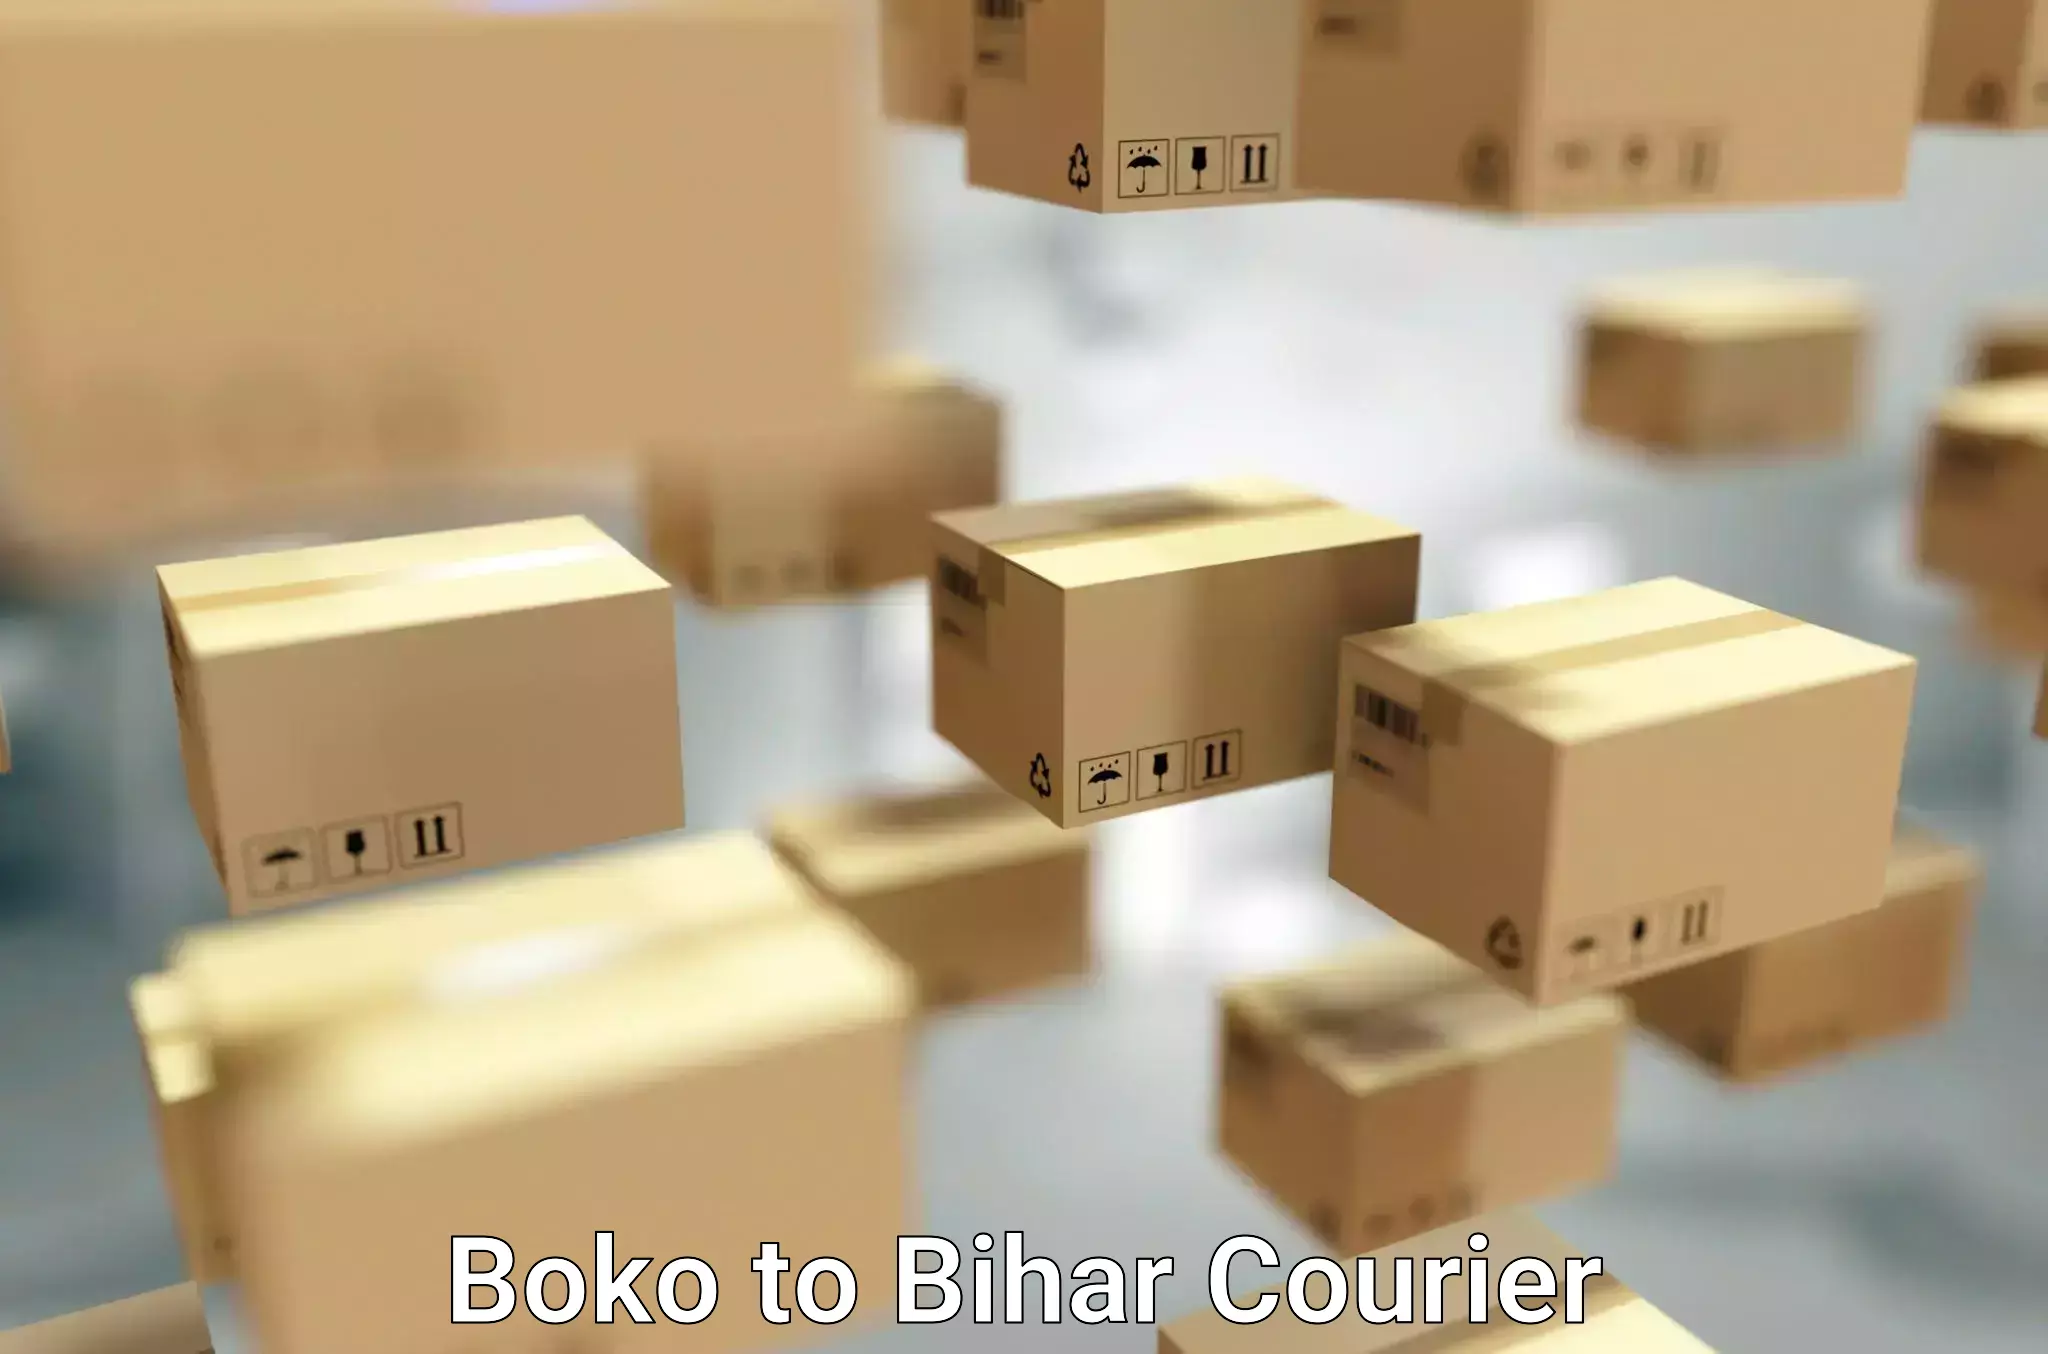 Furniture delivery service Boko to Mahnar Bazar